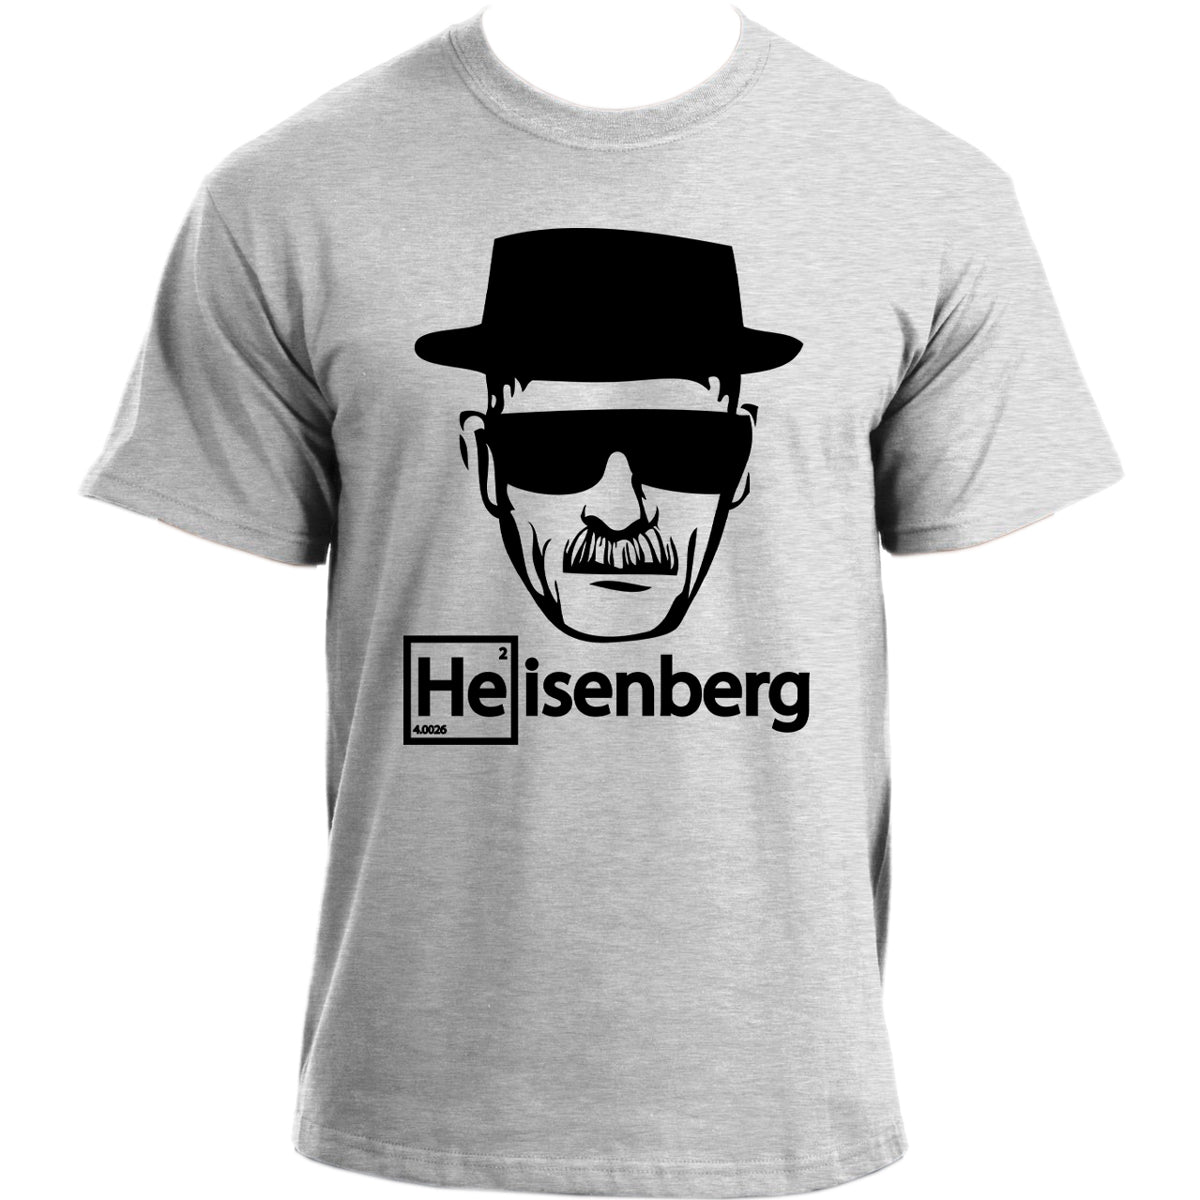 Heisenberg Element He Walter White Mr. White Face Breaking Bad inspired T-Shirt